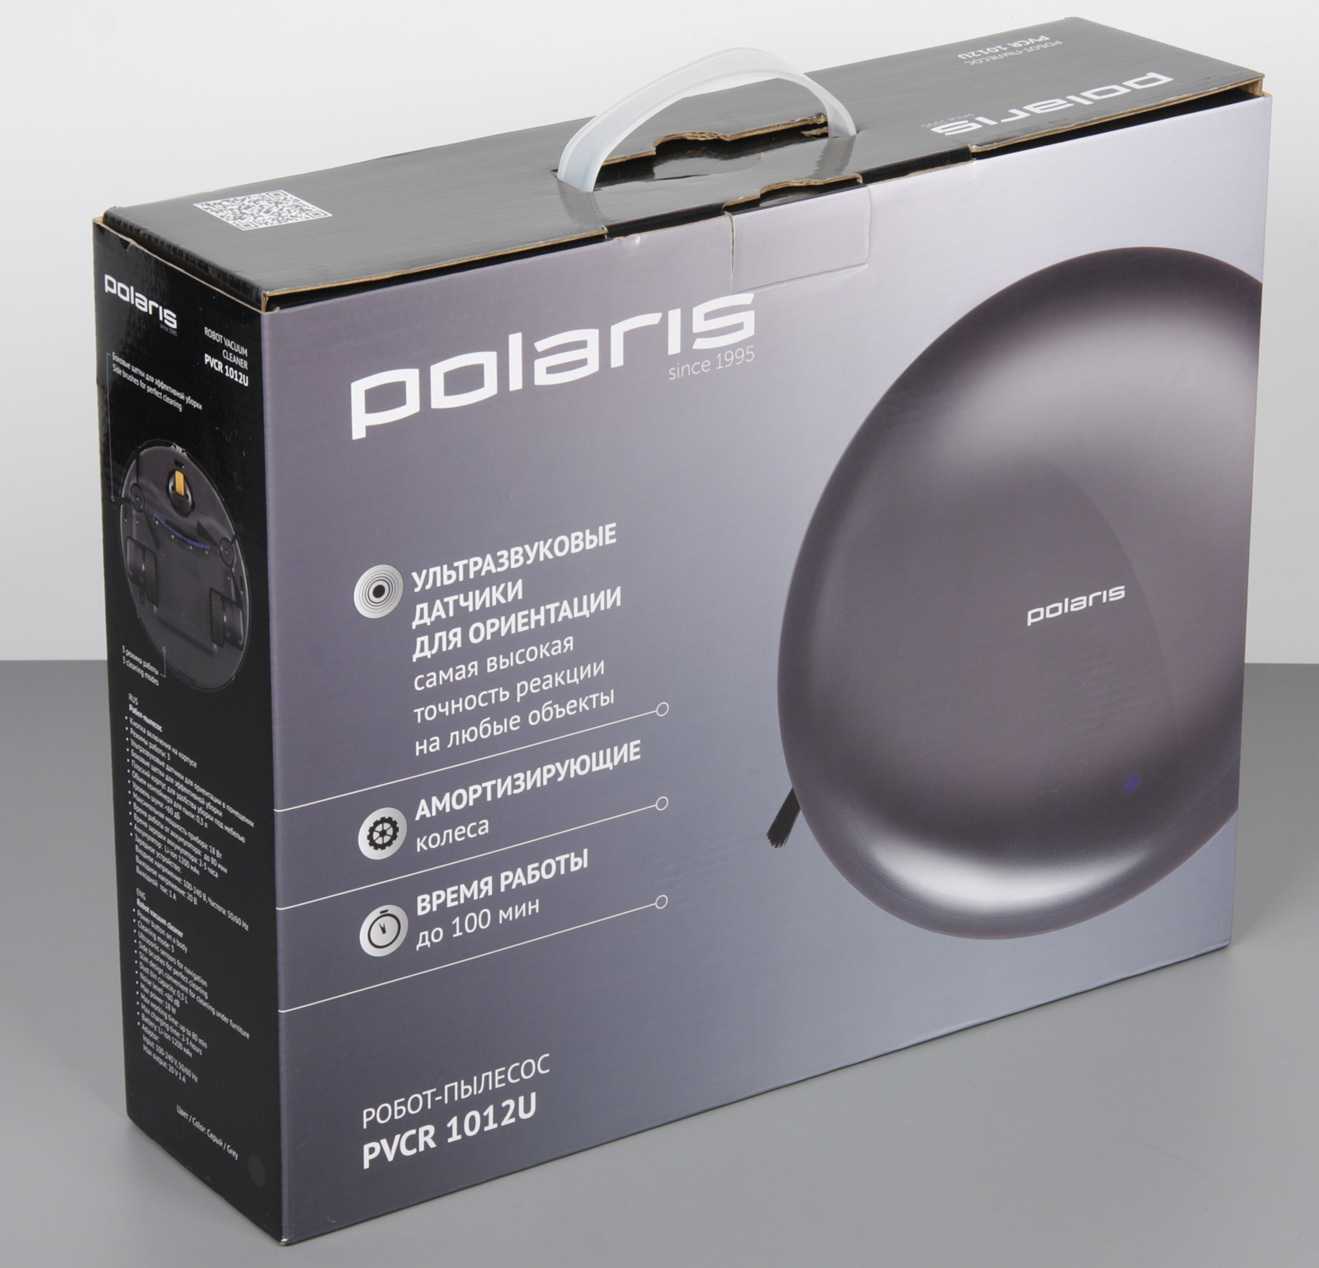 Топ-5 лучших моделей роботов-пылесосов polaris. обзор, характеристики, плюсы и минусы